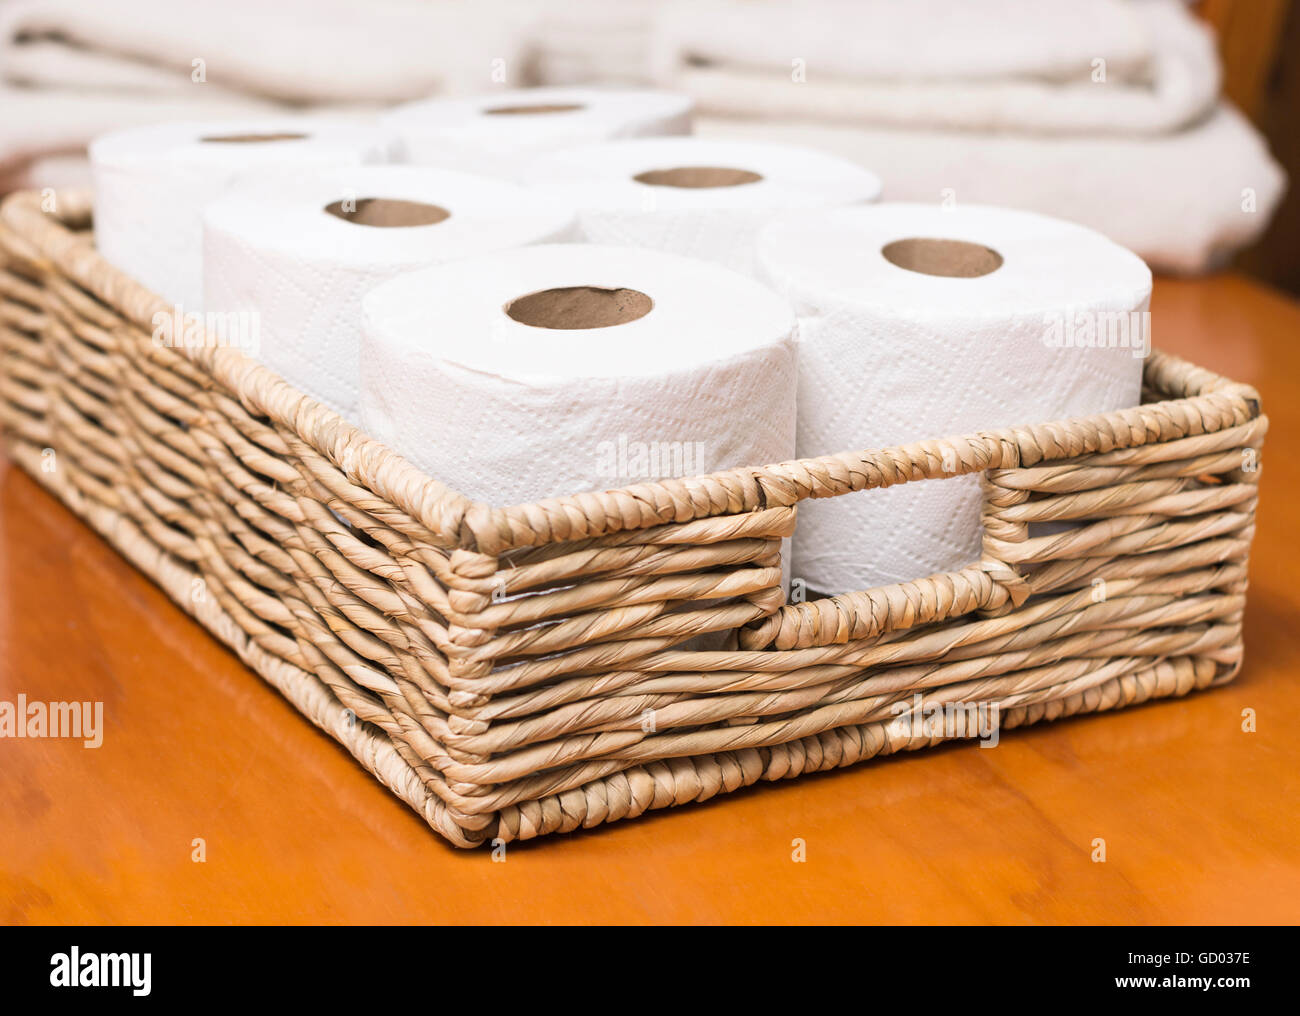 Des rouleaux de papier de toilette sur panier en osier Banque D'Images